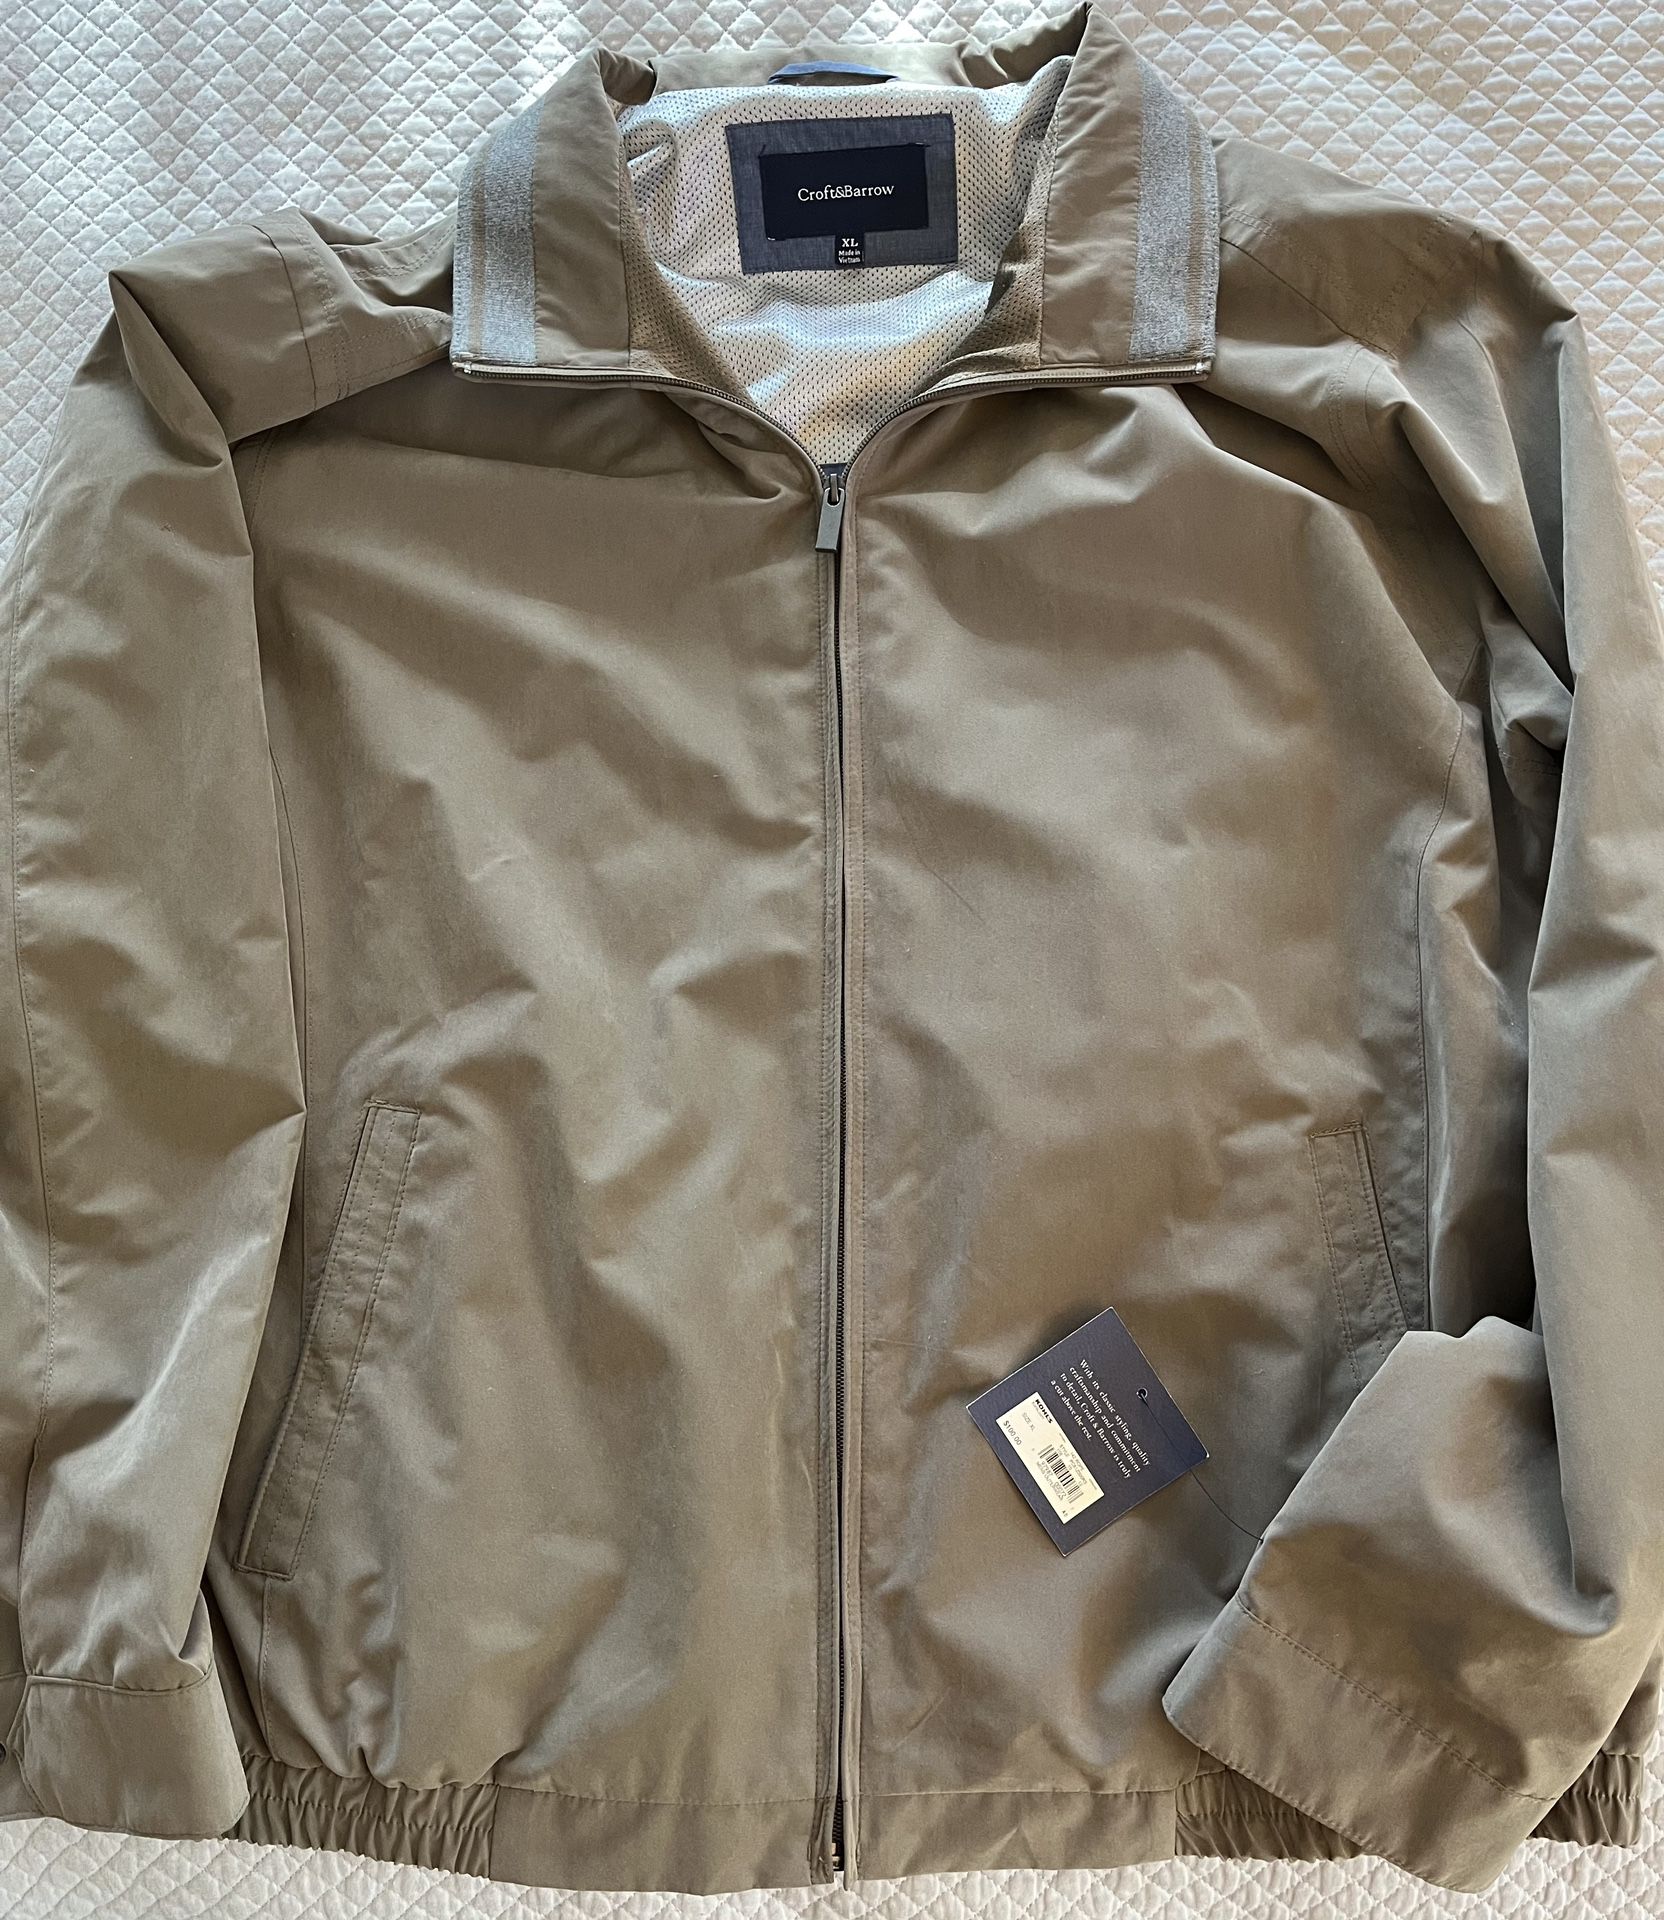 Men’s jacket XL NEW